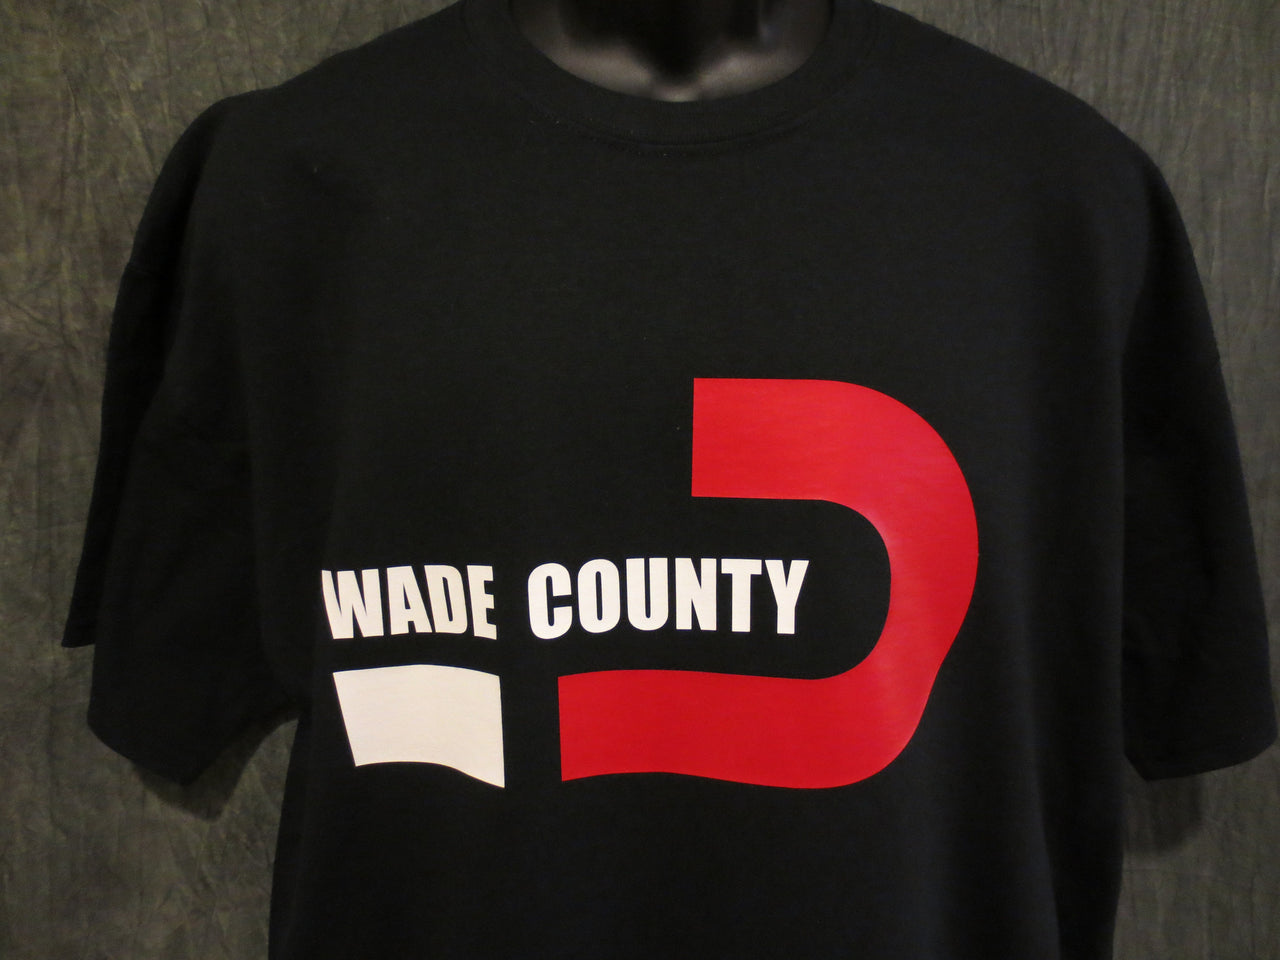 Miami Heat "Wade County" Dwyane Wade Black Tshirt - TshirtNow.net - 4